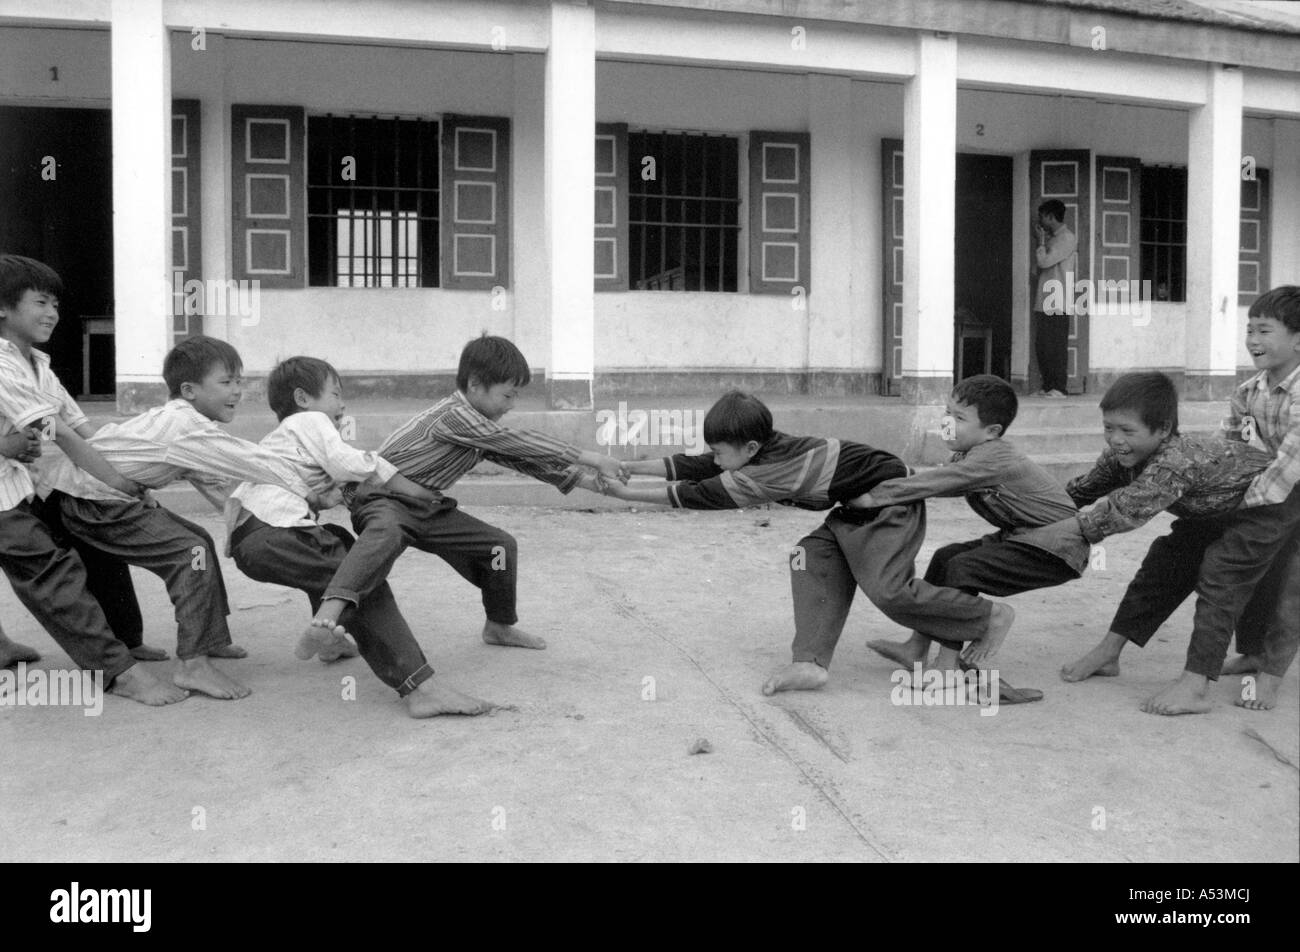 Painet ha1395 209 black and white children boys having tugowar tug-o-war tug og war games match ky anh vietnam country Stock Photo